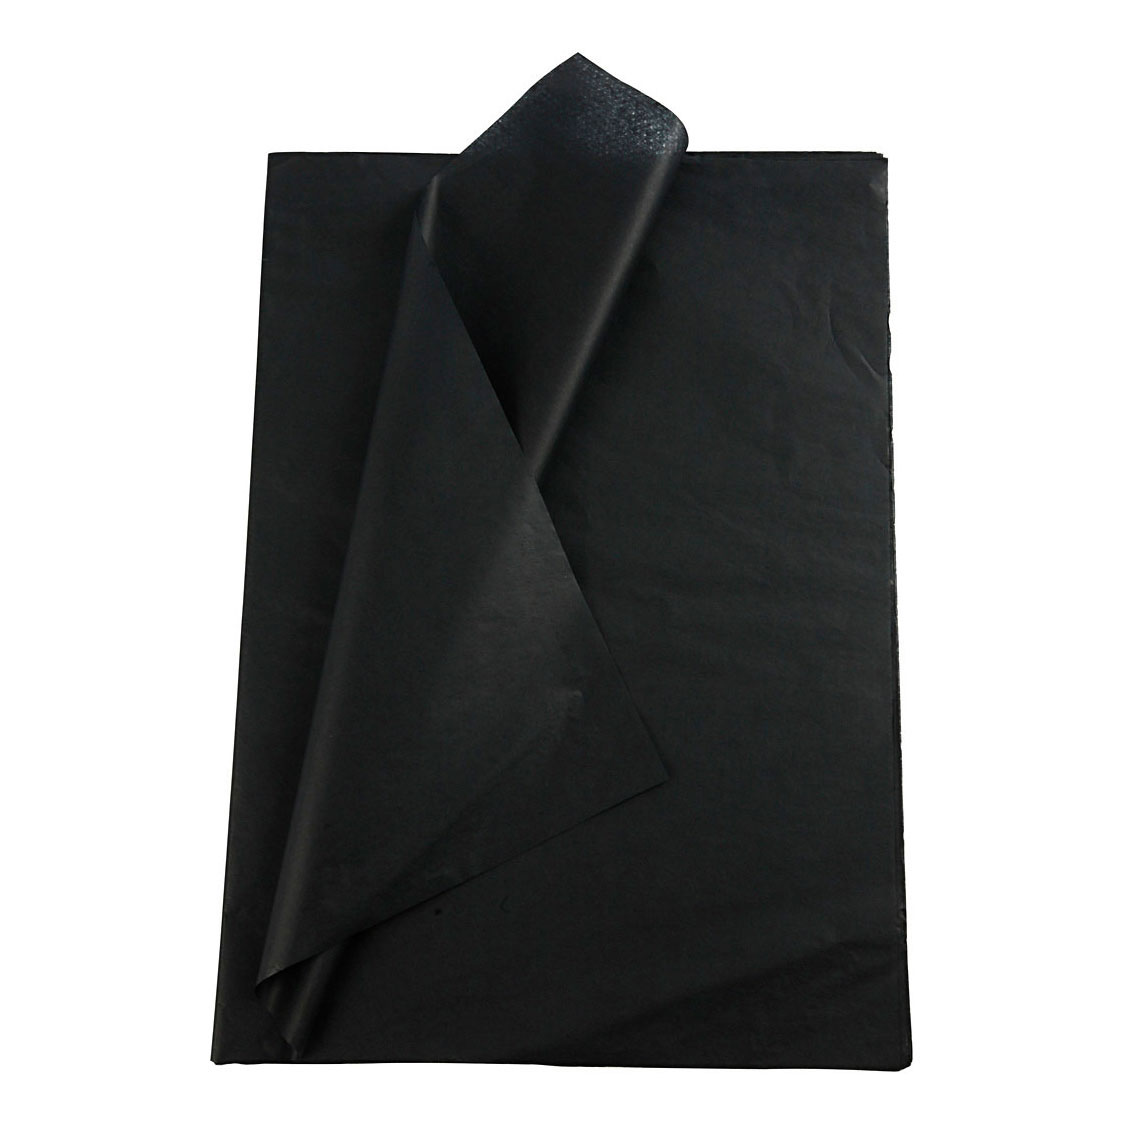 Papier de soie Noir 10 Feuilles 14 gr, 50x70cm